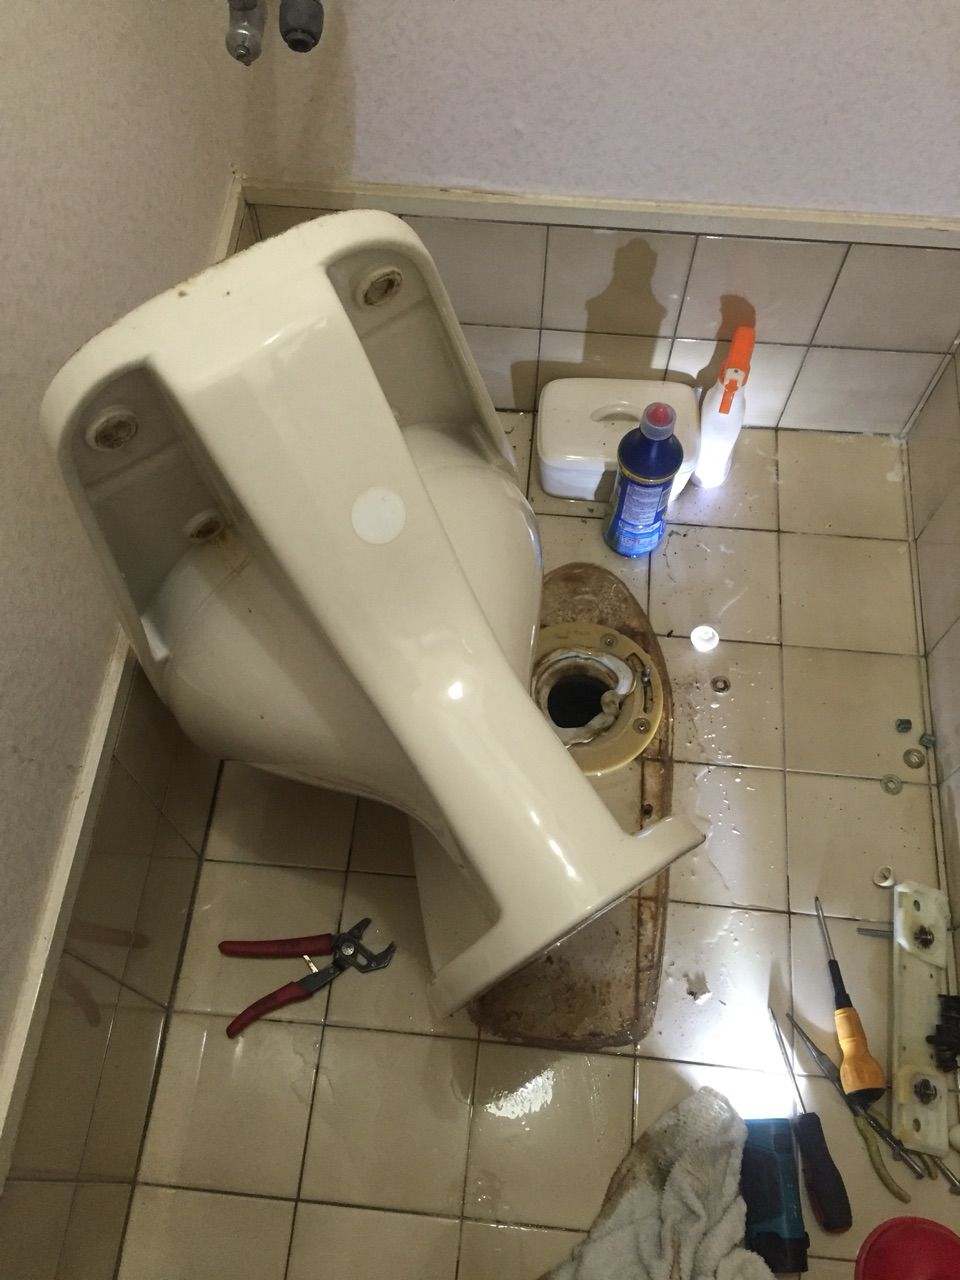 水もれドルフィンの安心だいじょうブログ トイレ水漏れ 便器と床の繋ぎ目から水が漏れてくる つまり 京都市